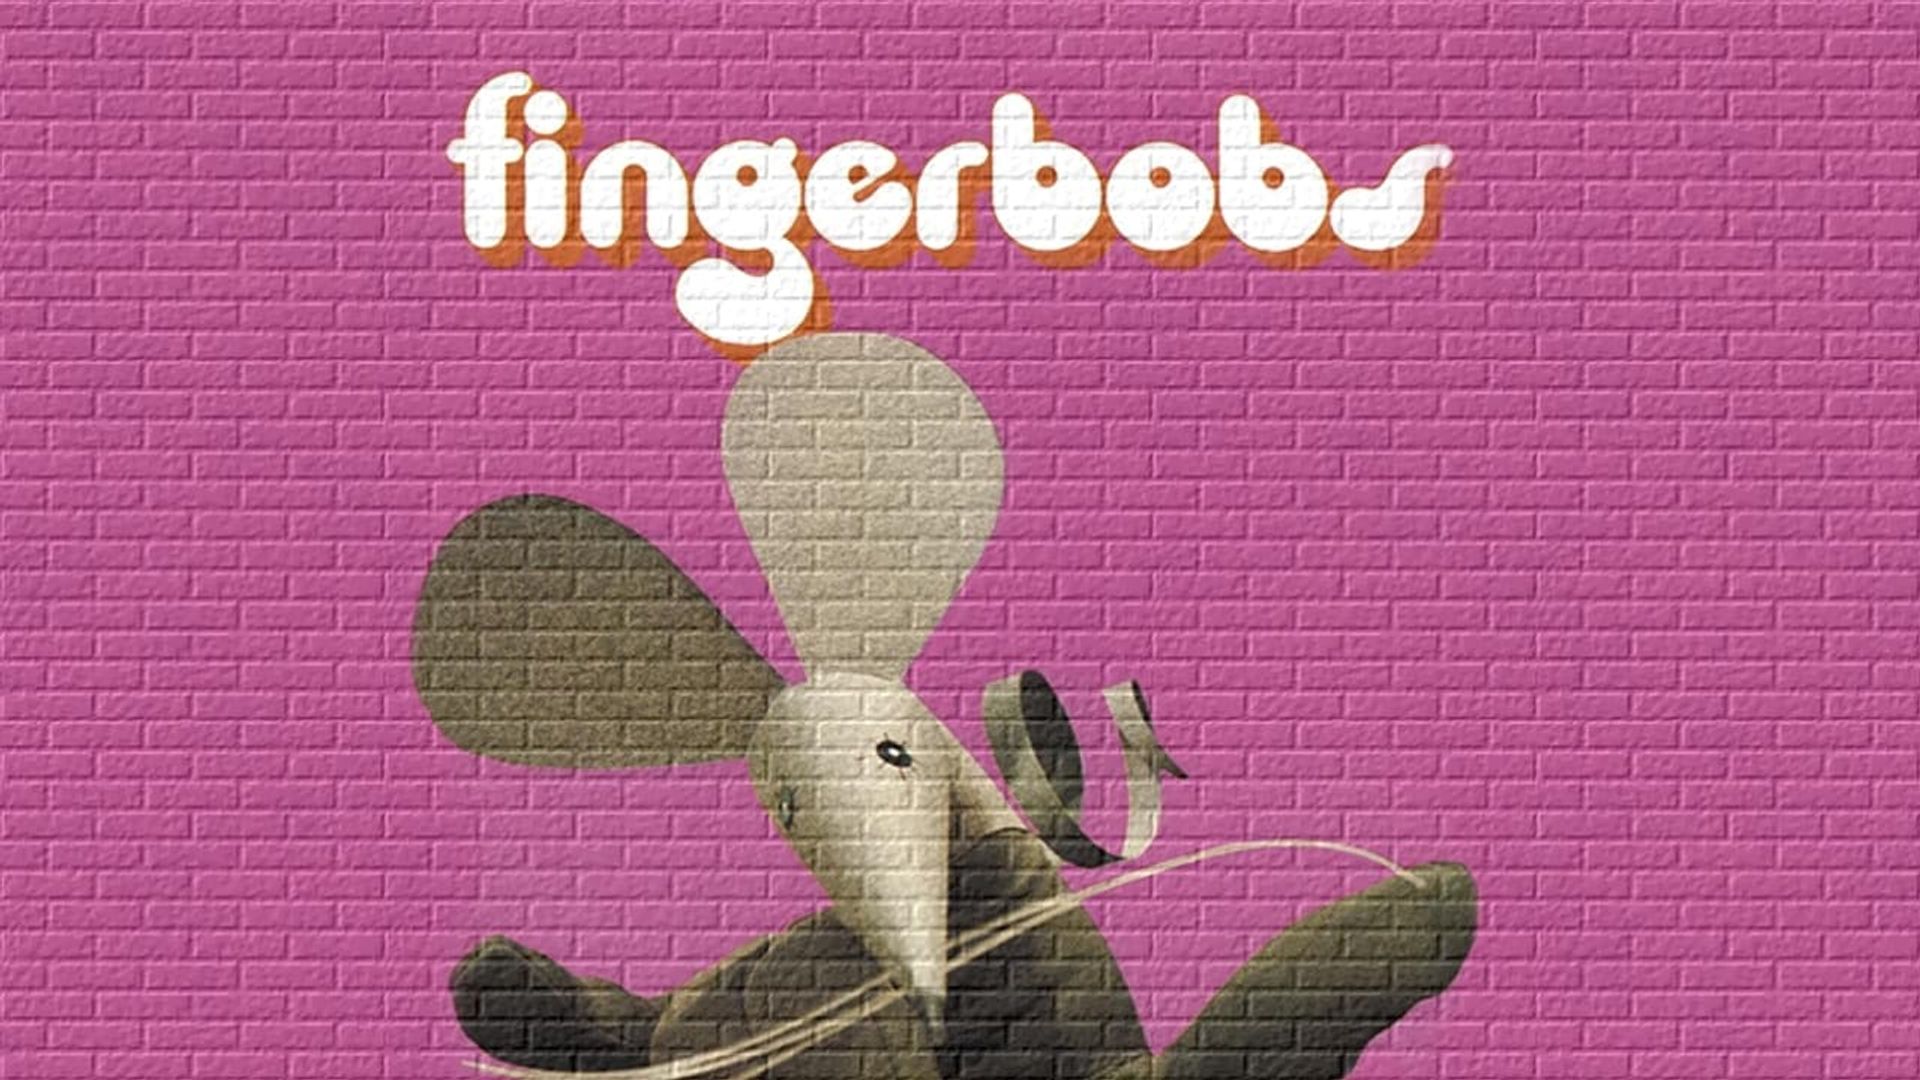 Fingerbobs background